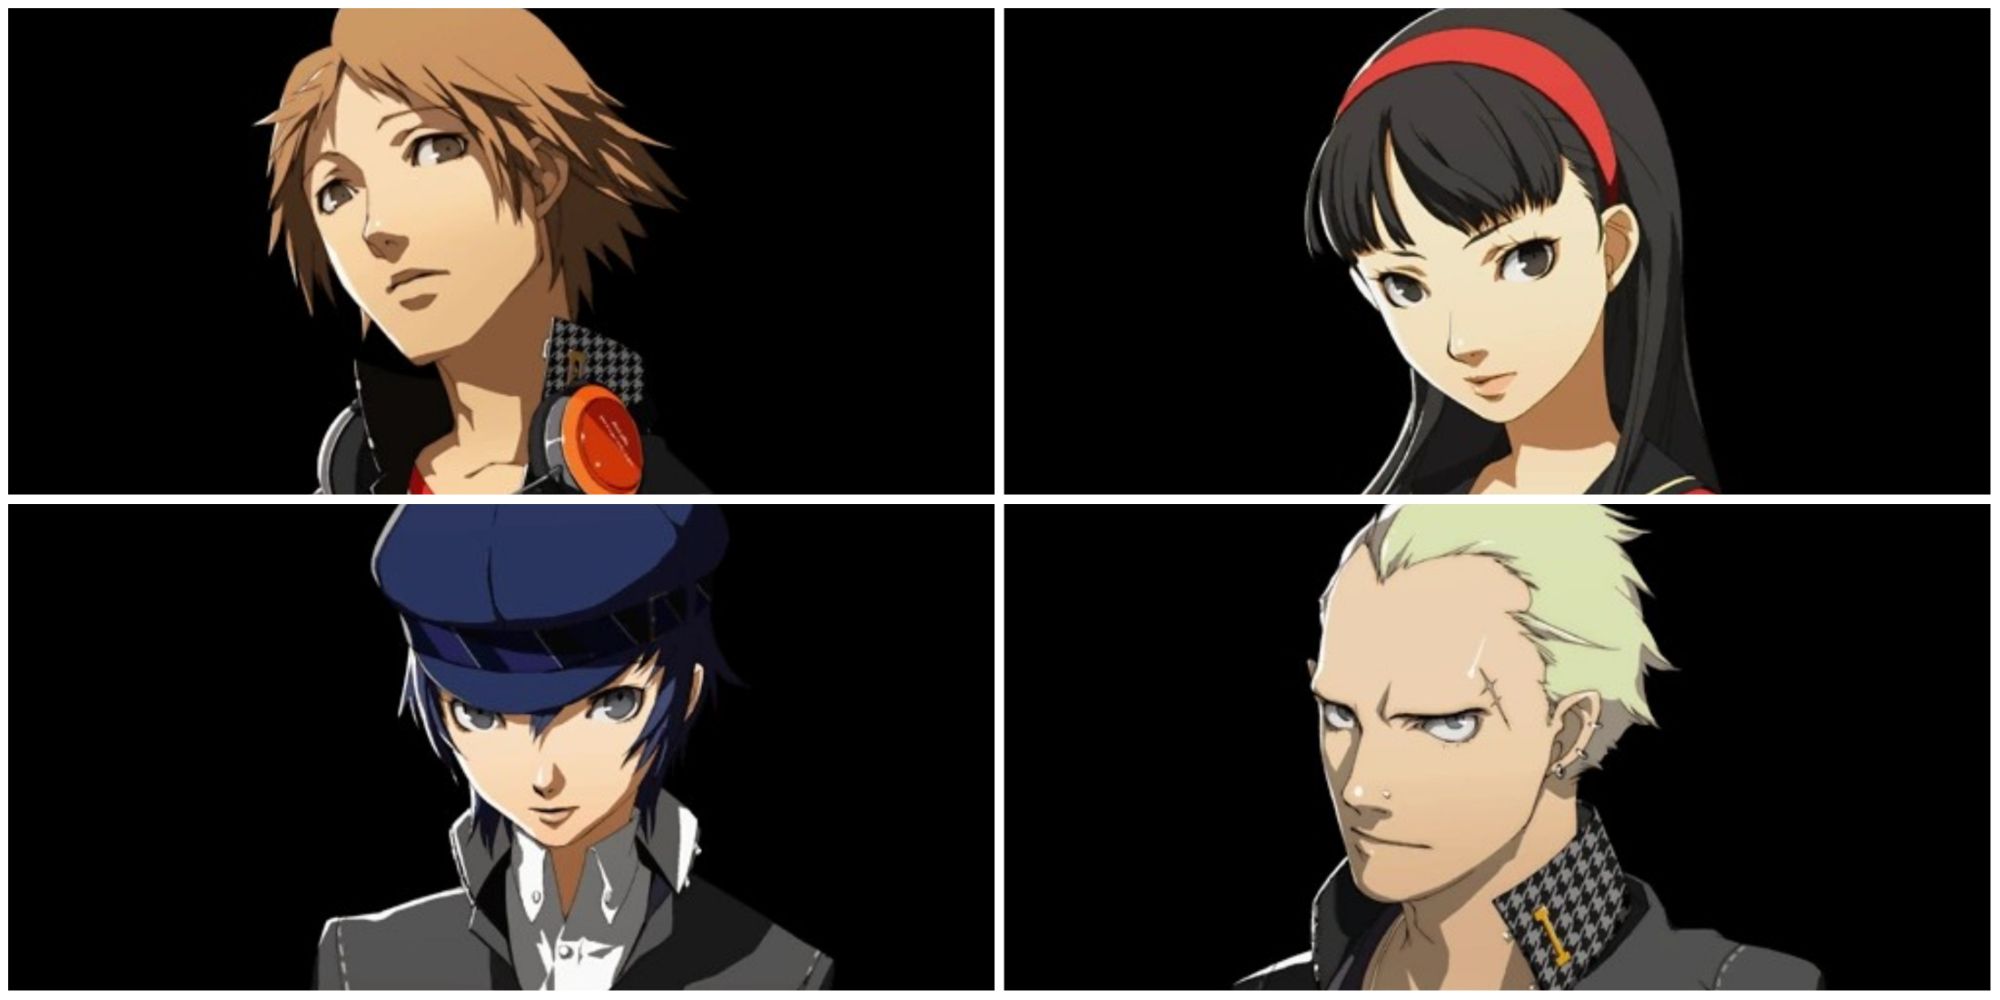 Yosuke, Yukiko, Naoto, and Kanji from Persona 4